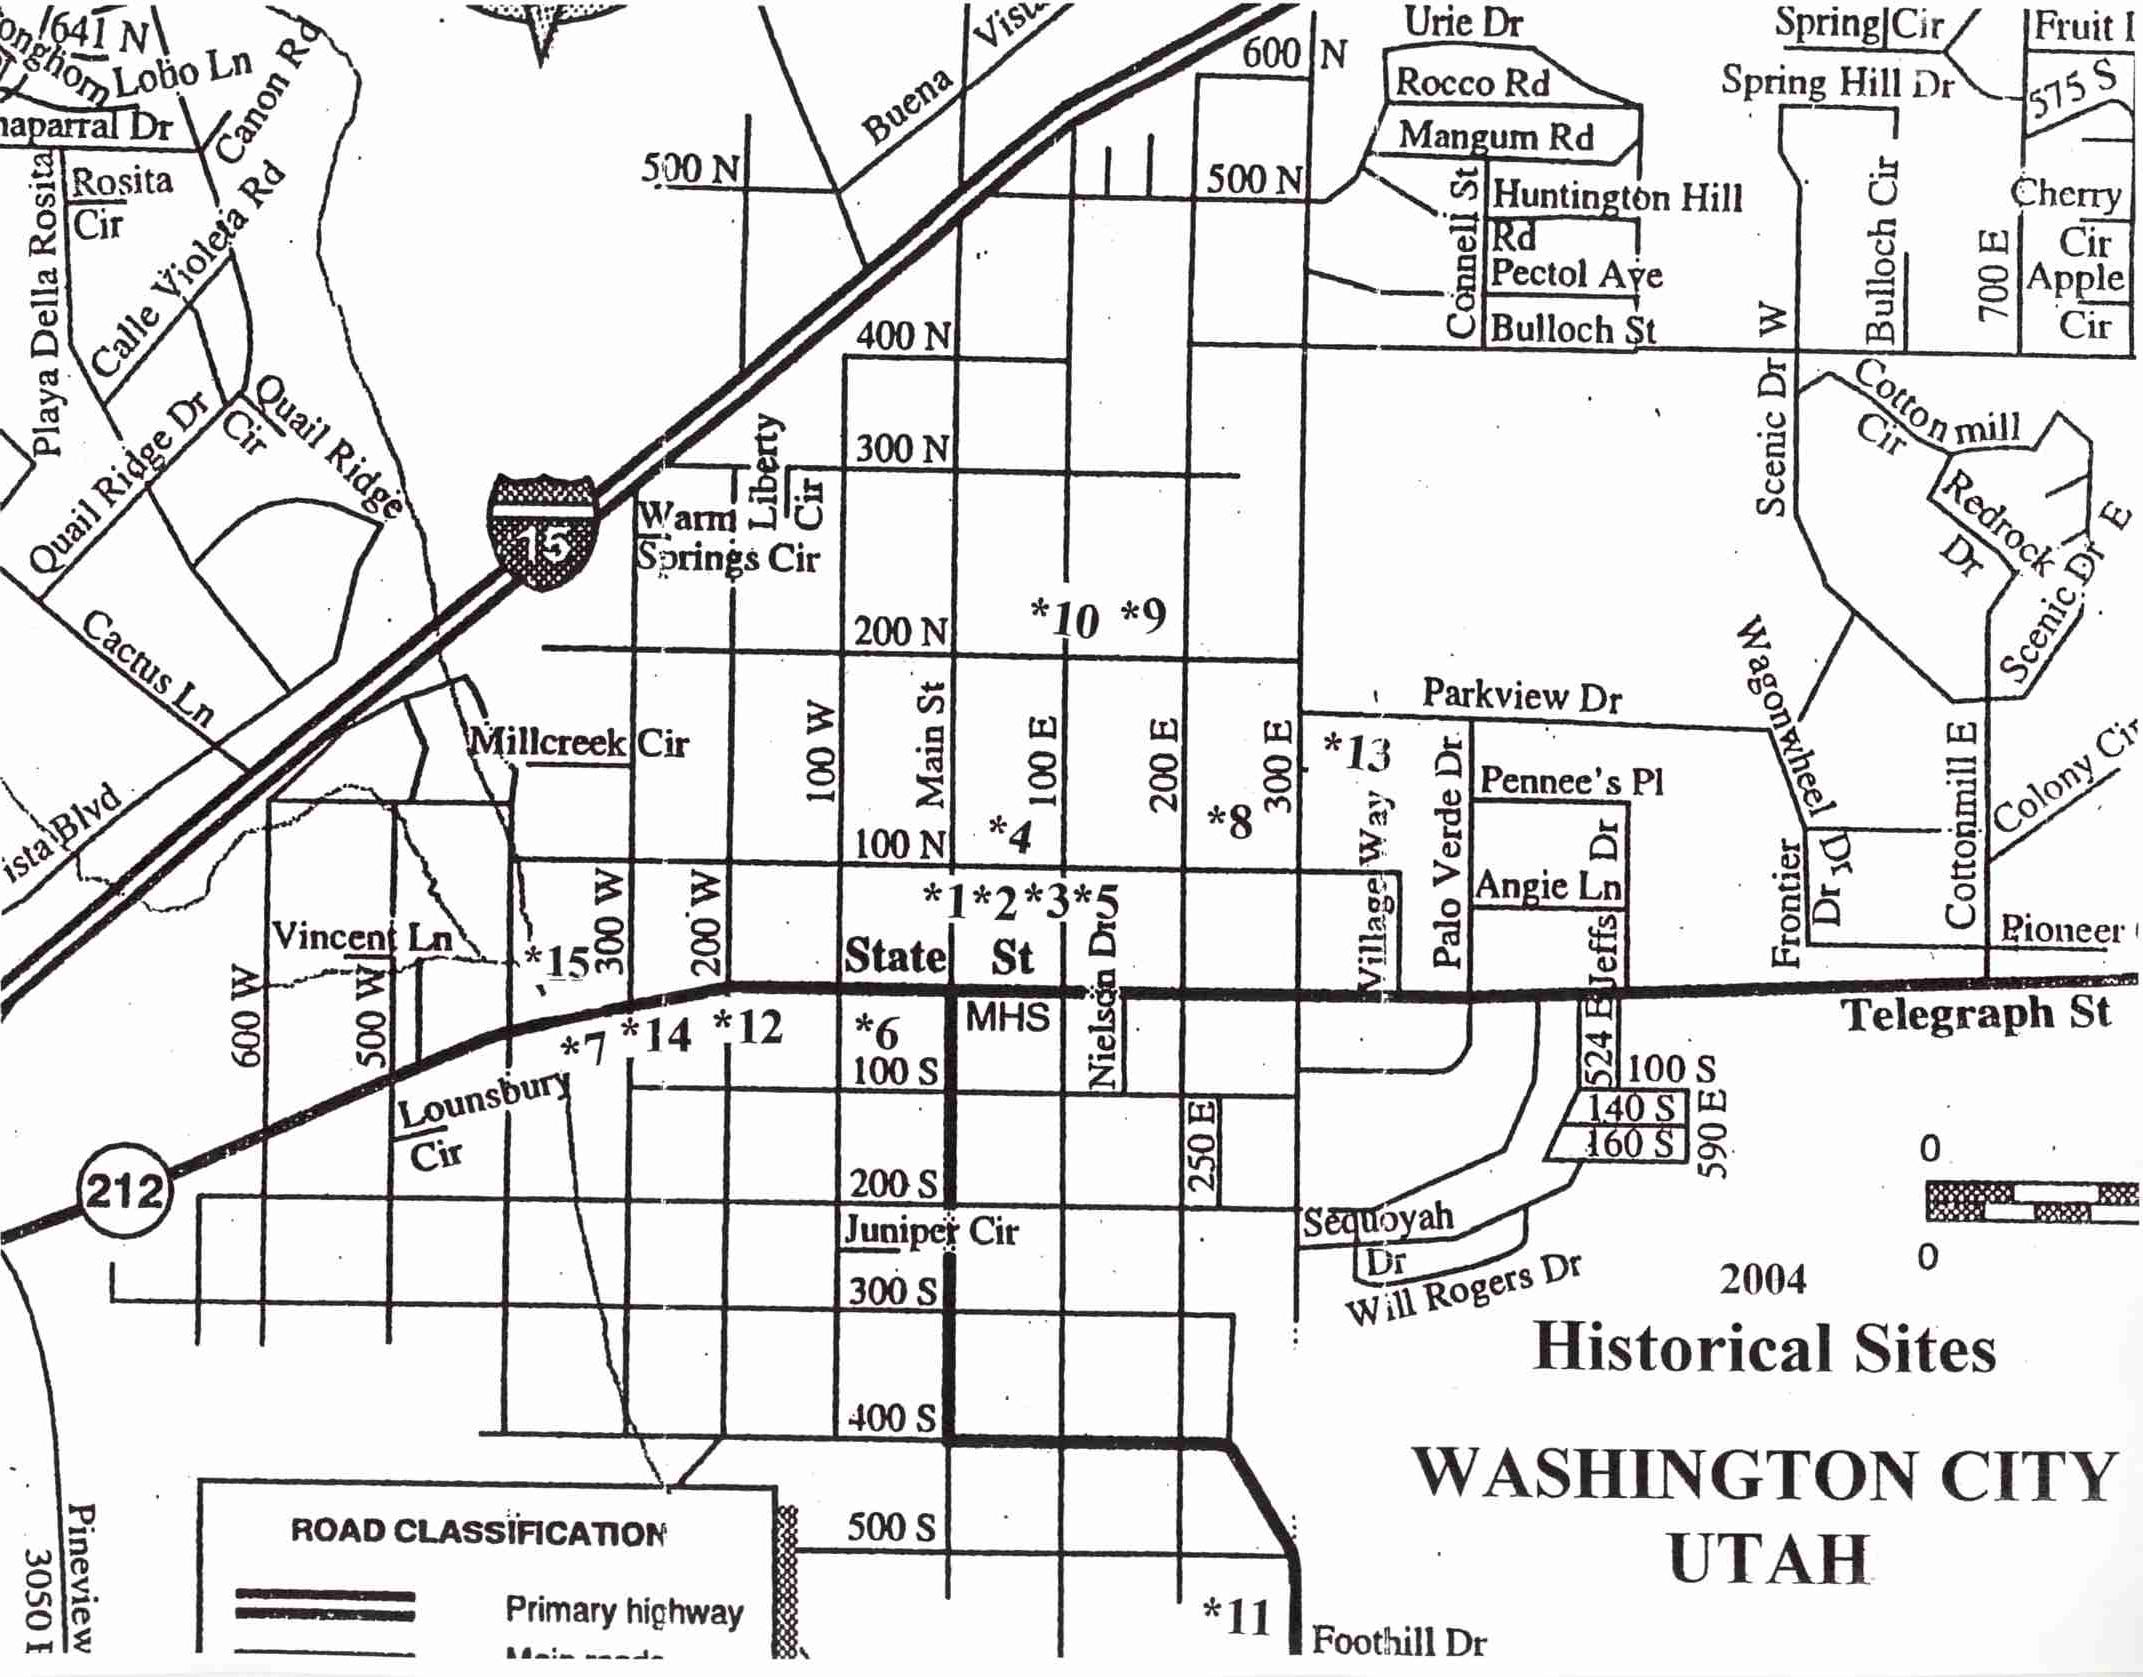 Washington City Historical Sites